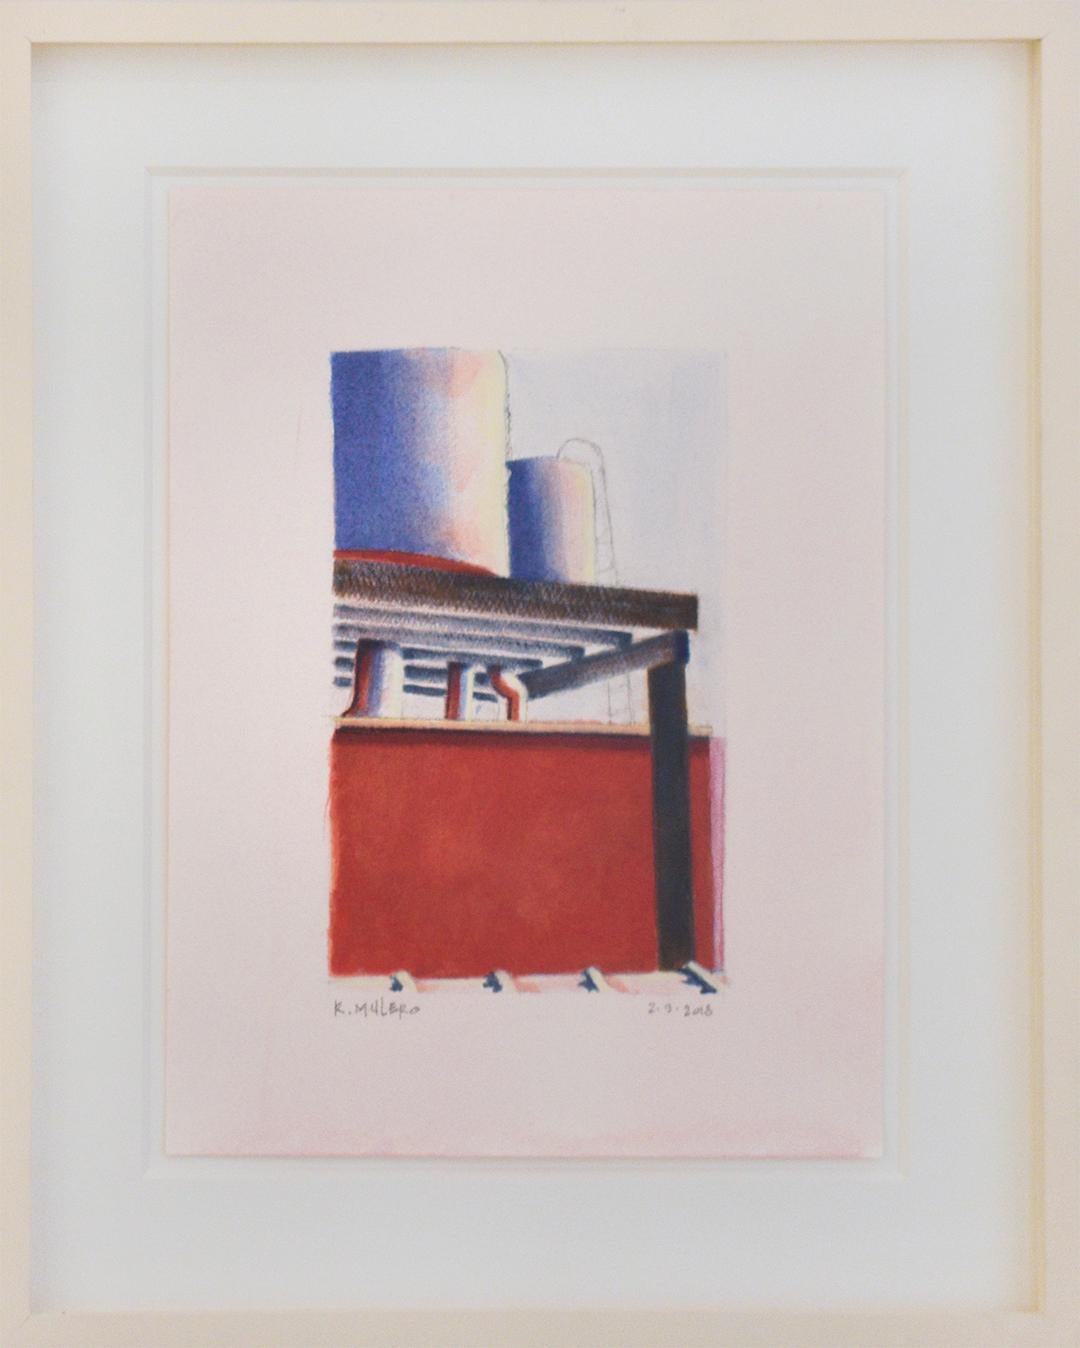 Ohne Titel II (Abstrakte Stadtlandschaft, Gemälde mit Skyline und Wasserturm in Rot und Blau) – Painting von Ricardo Mulero 